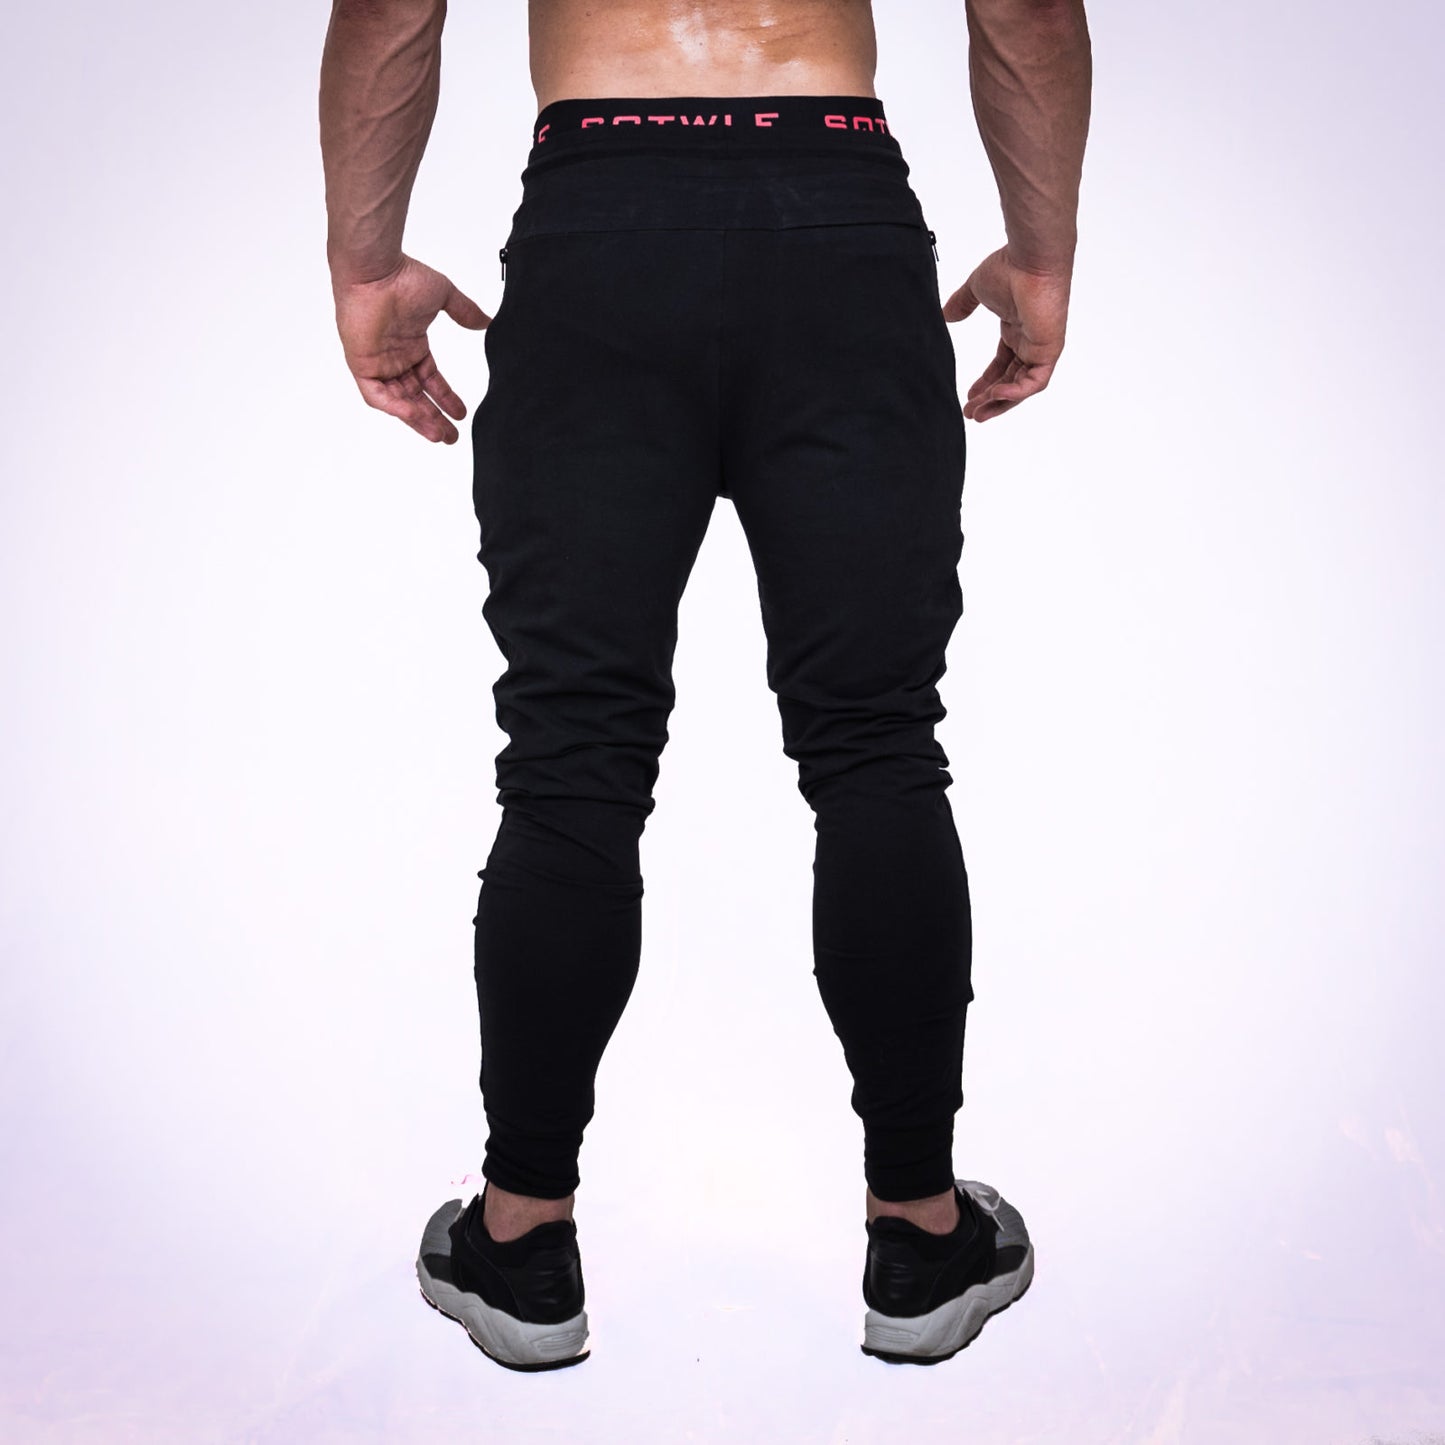 squatwolf-gym-wear-black-jogger-pants-workout-pants-for-men